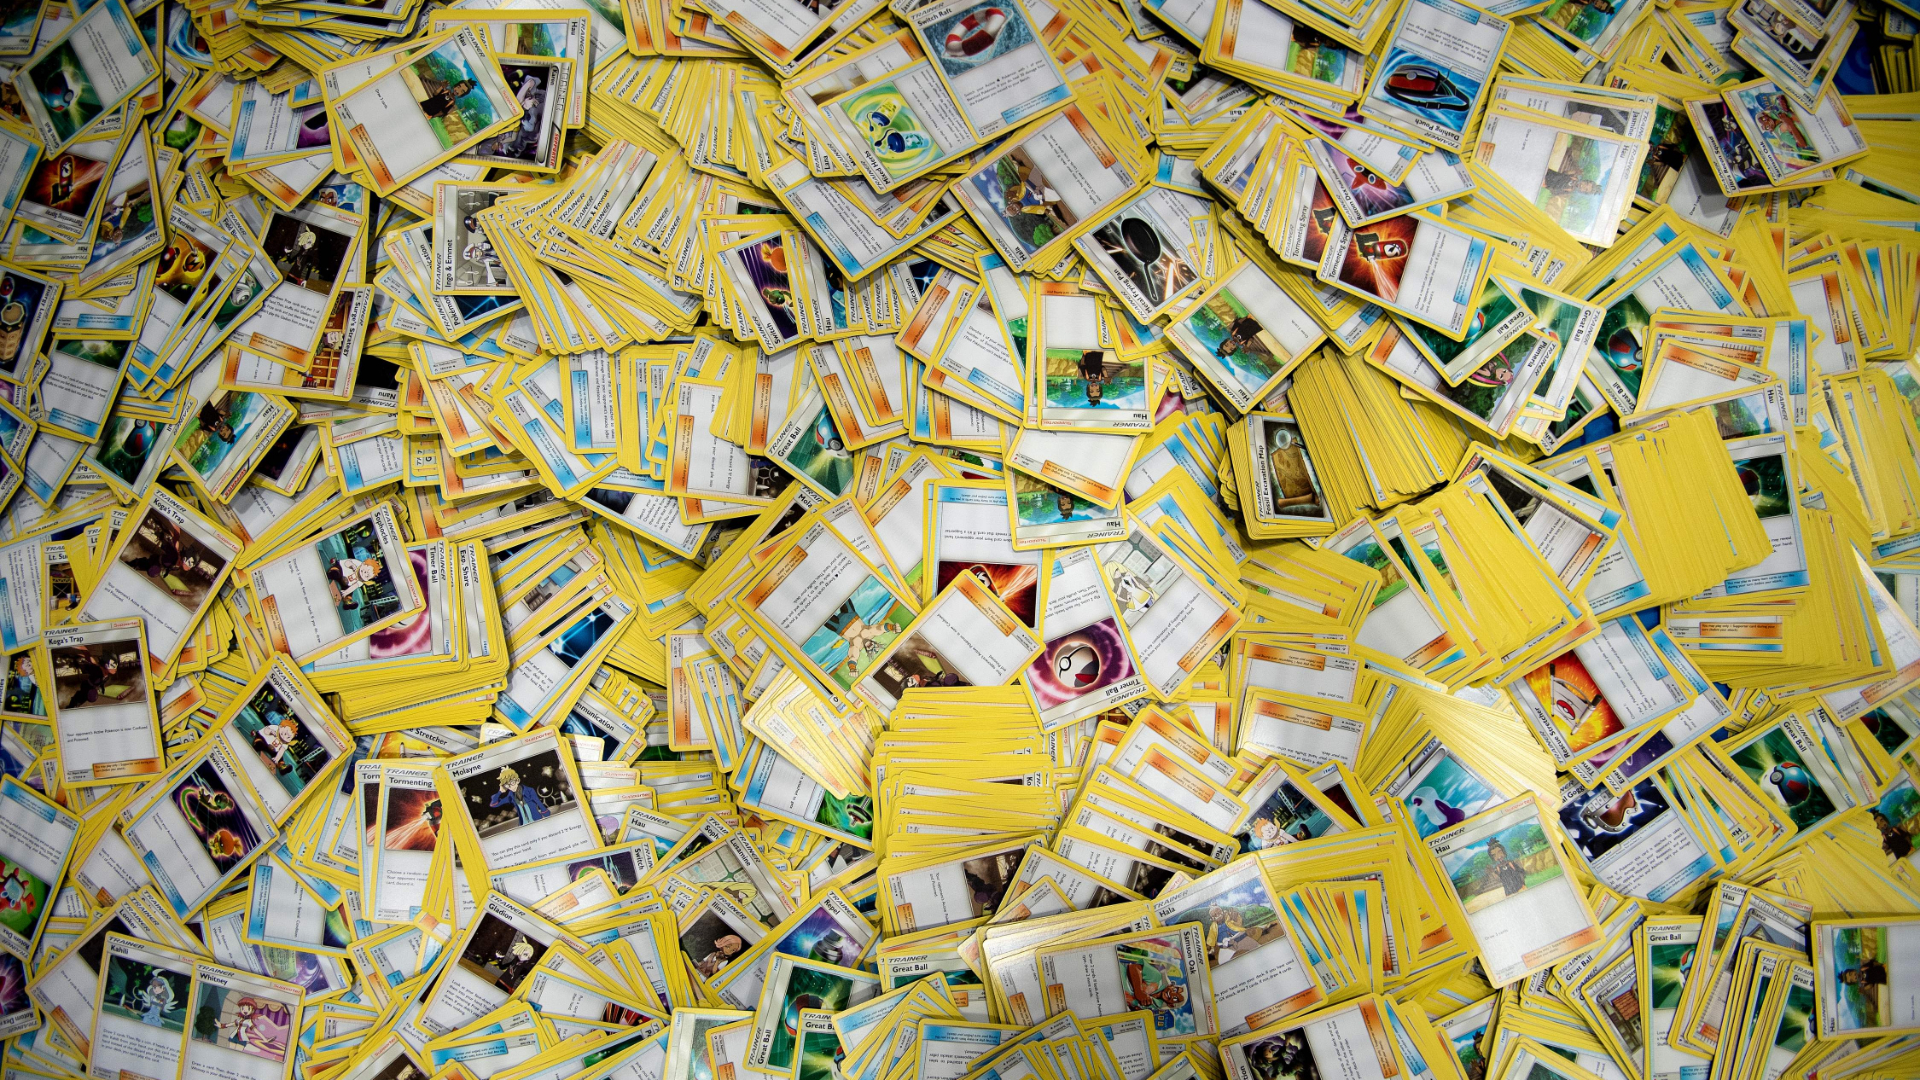 Very Rare 'Pokémon' Blastoise Card Sells at Auction for $360,000